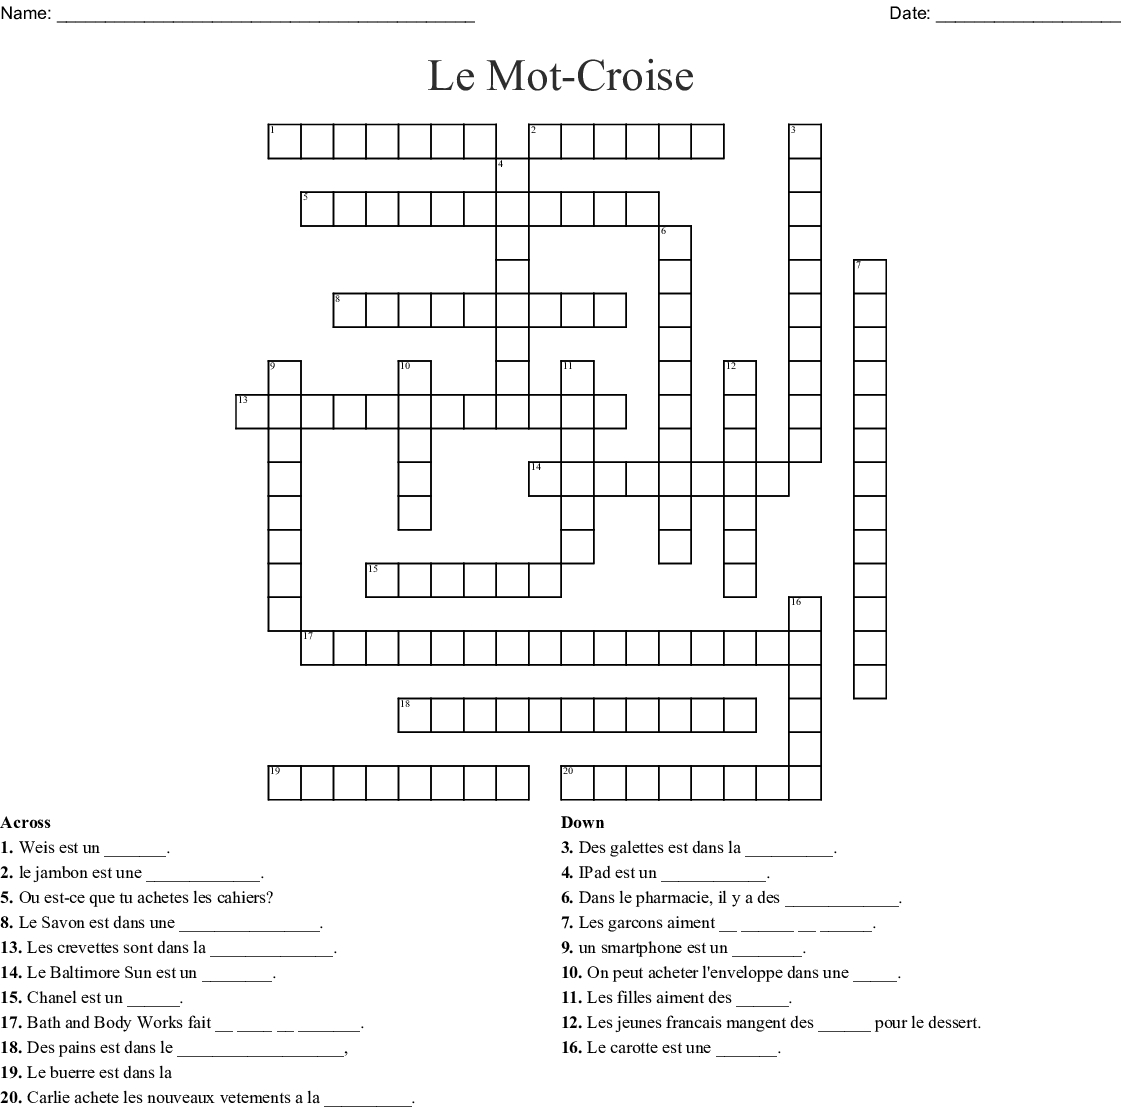 Le Mot-Croise Crossword - Wordmint avec Mot Croiser